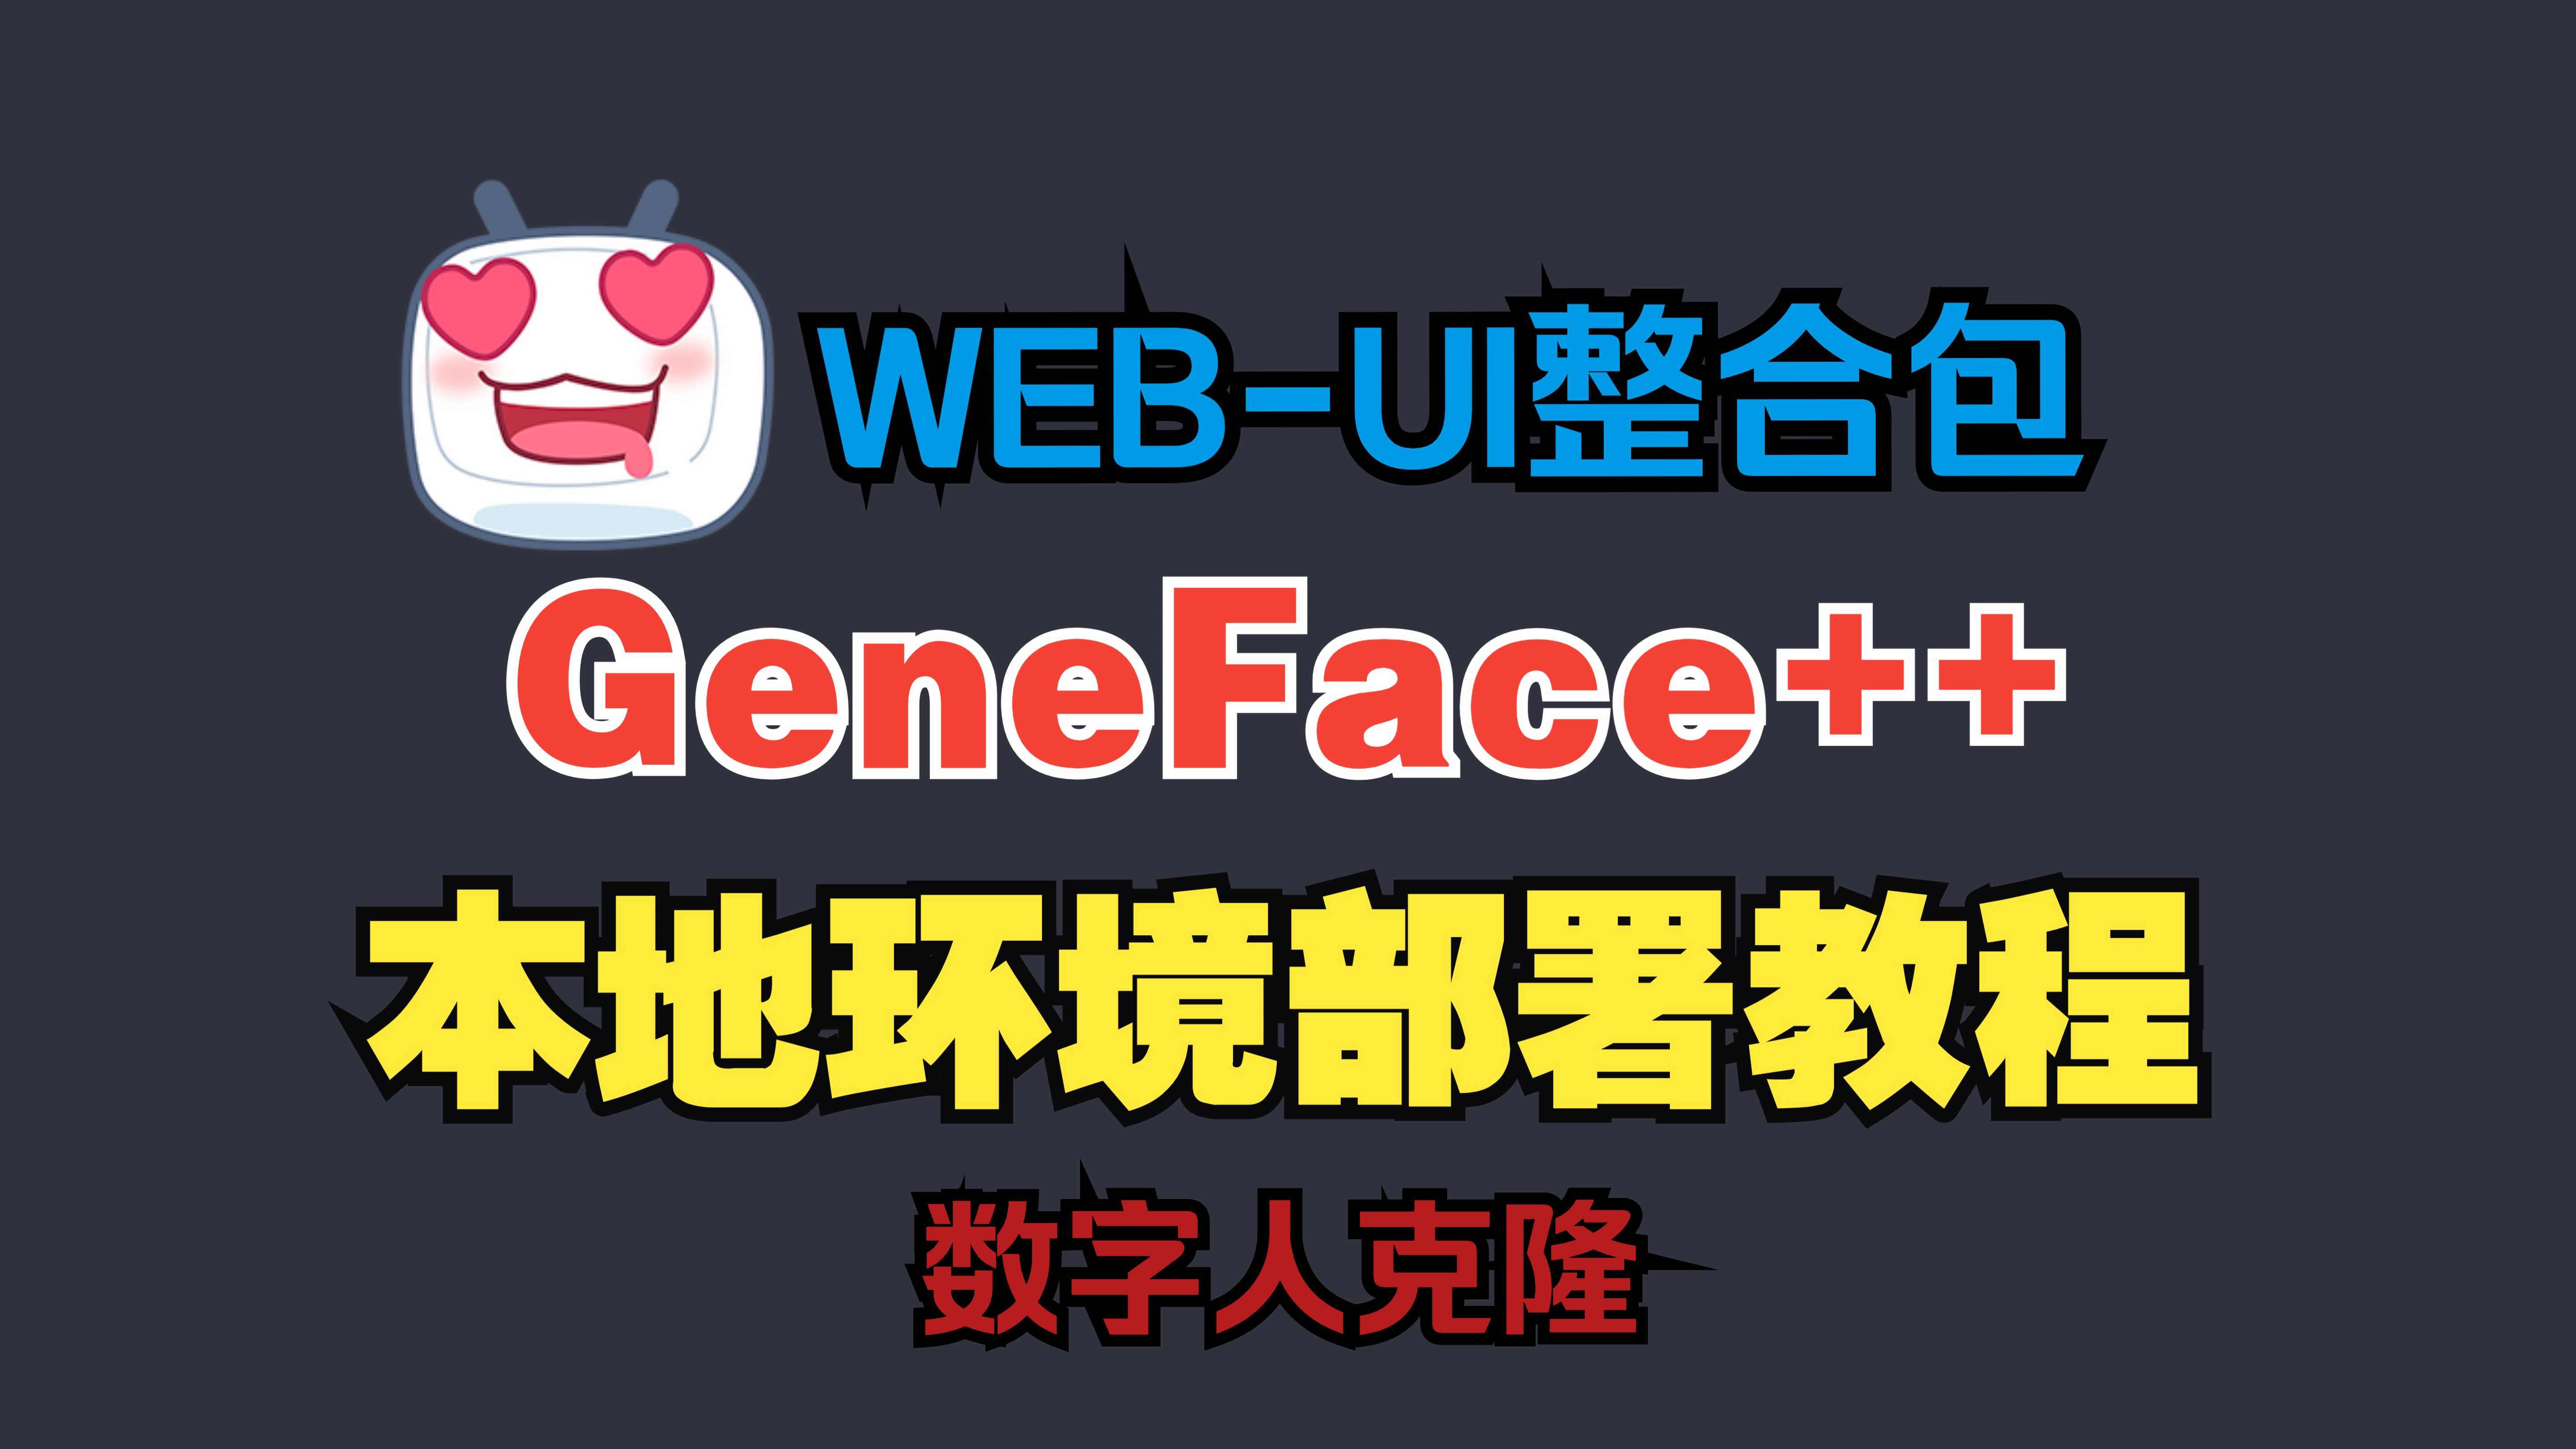 5.GeneFace++ WebUI整合包发布，本地环境部署教程，一键开启数字人克隆，无脑训练，制作个人可用可控可调的数字人，视频数字人